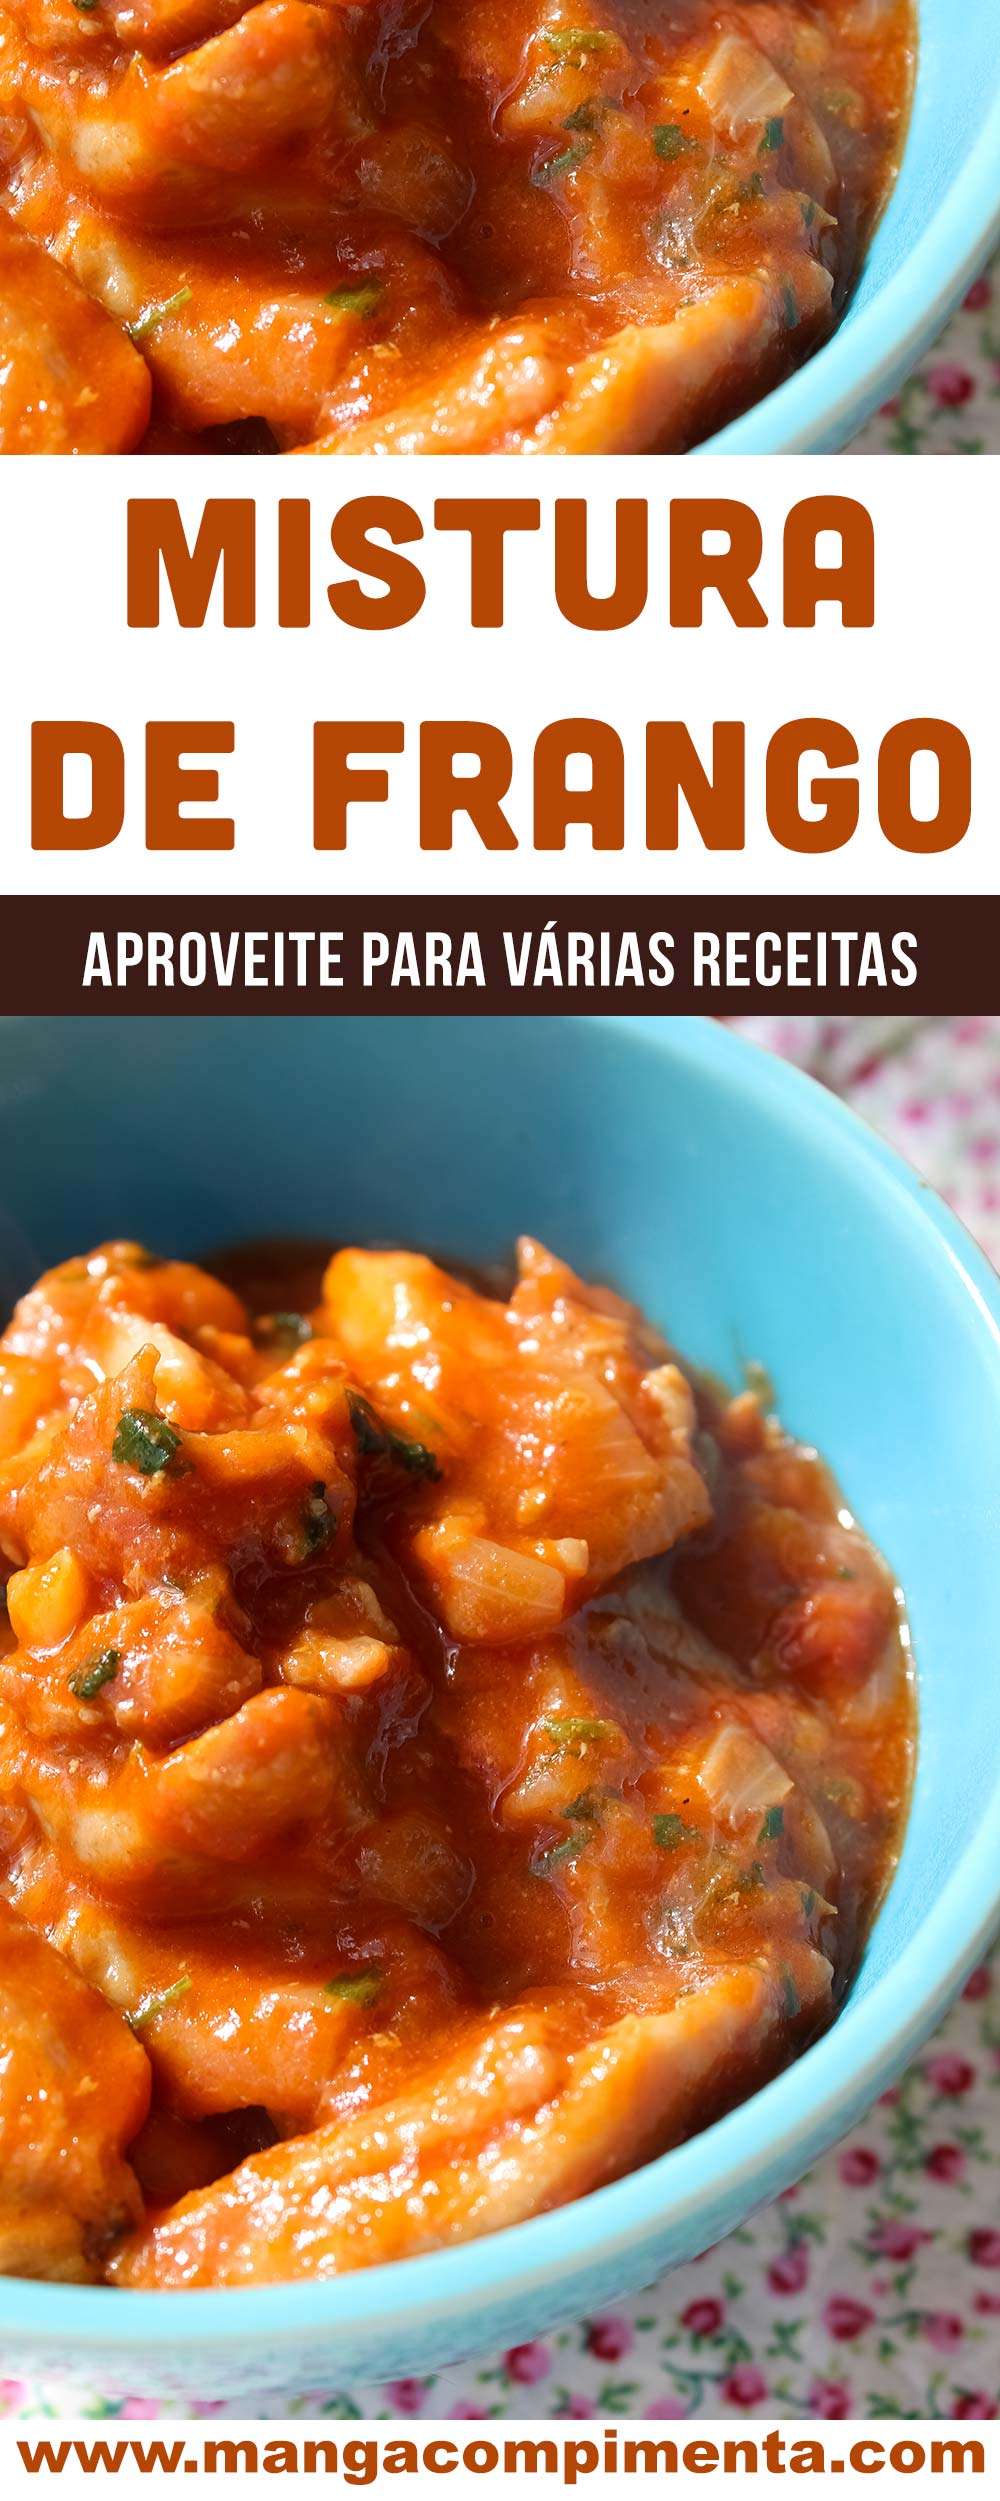 Receita de Mistura de Frango - prepare delícias na cozinha com essa base de carne.